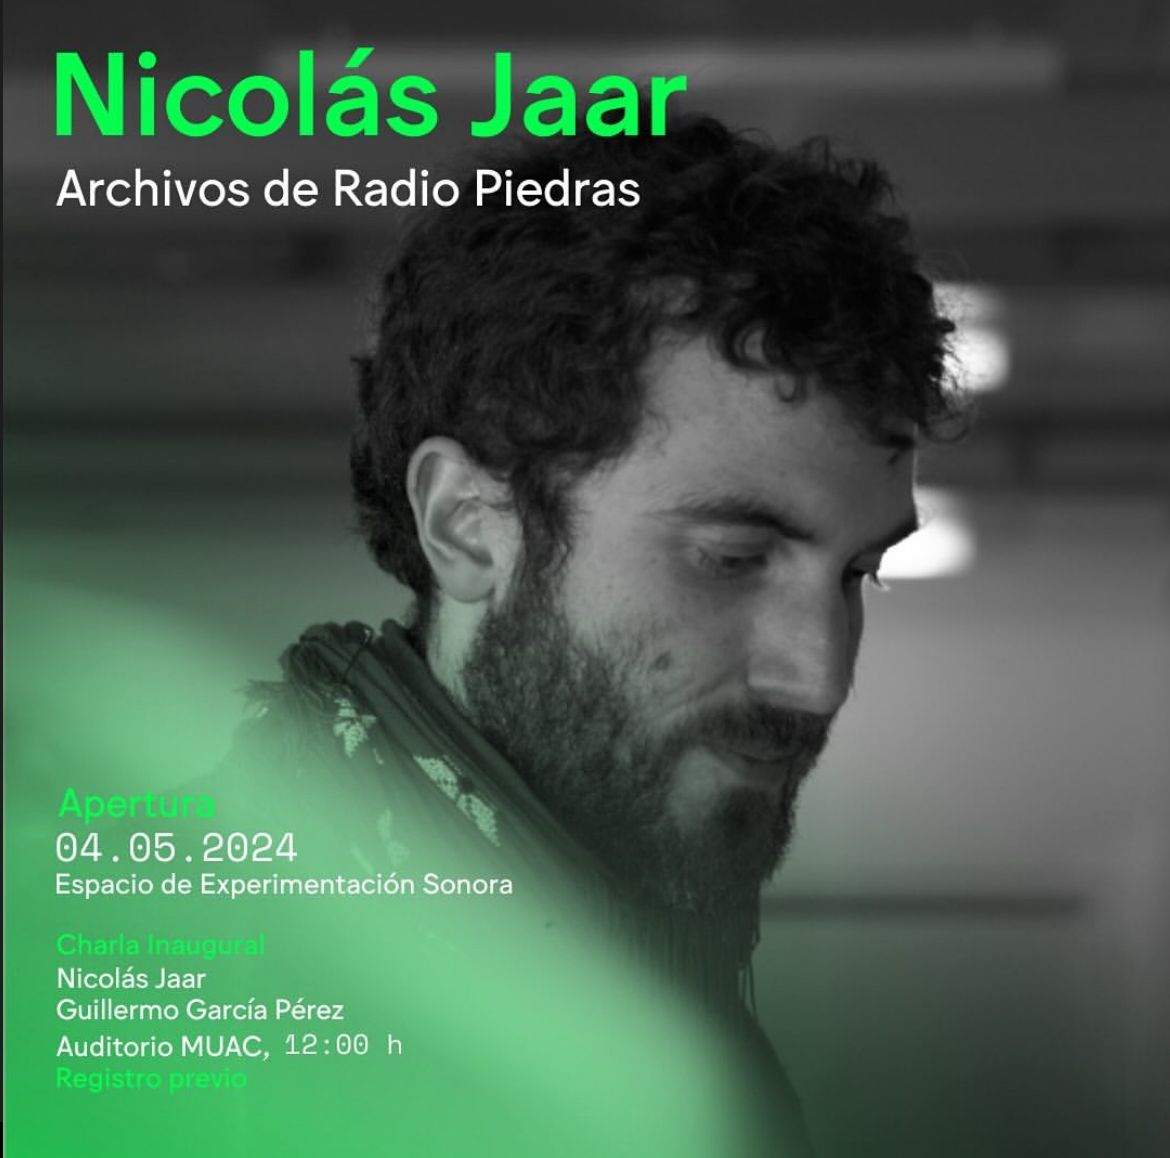 Nicolas Jaar: Archivos de Radio Piedras - フライヤー表